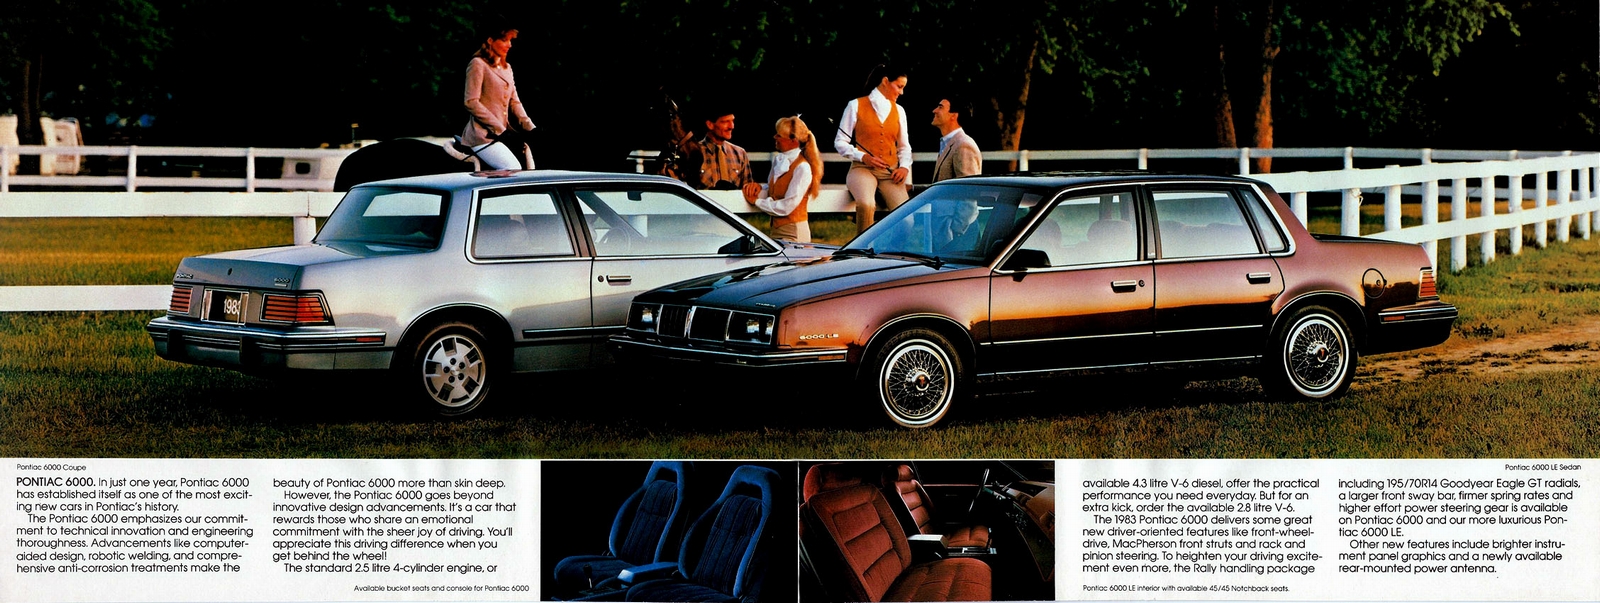 n_1983 Pontiac 6000 (Cdn)-04-05.jpg